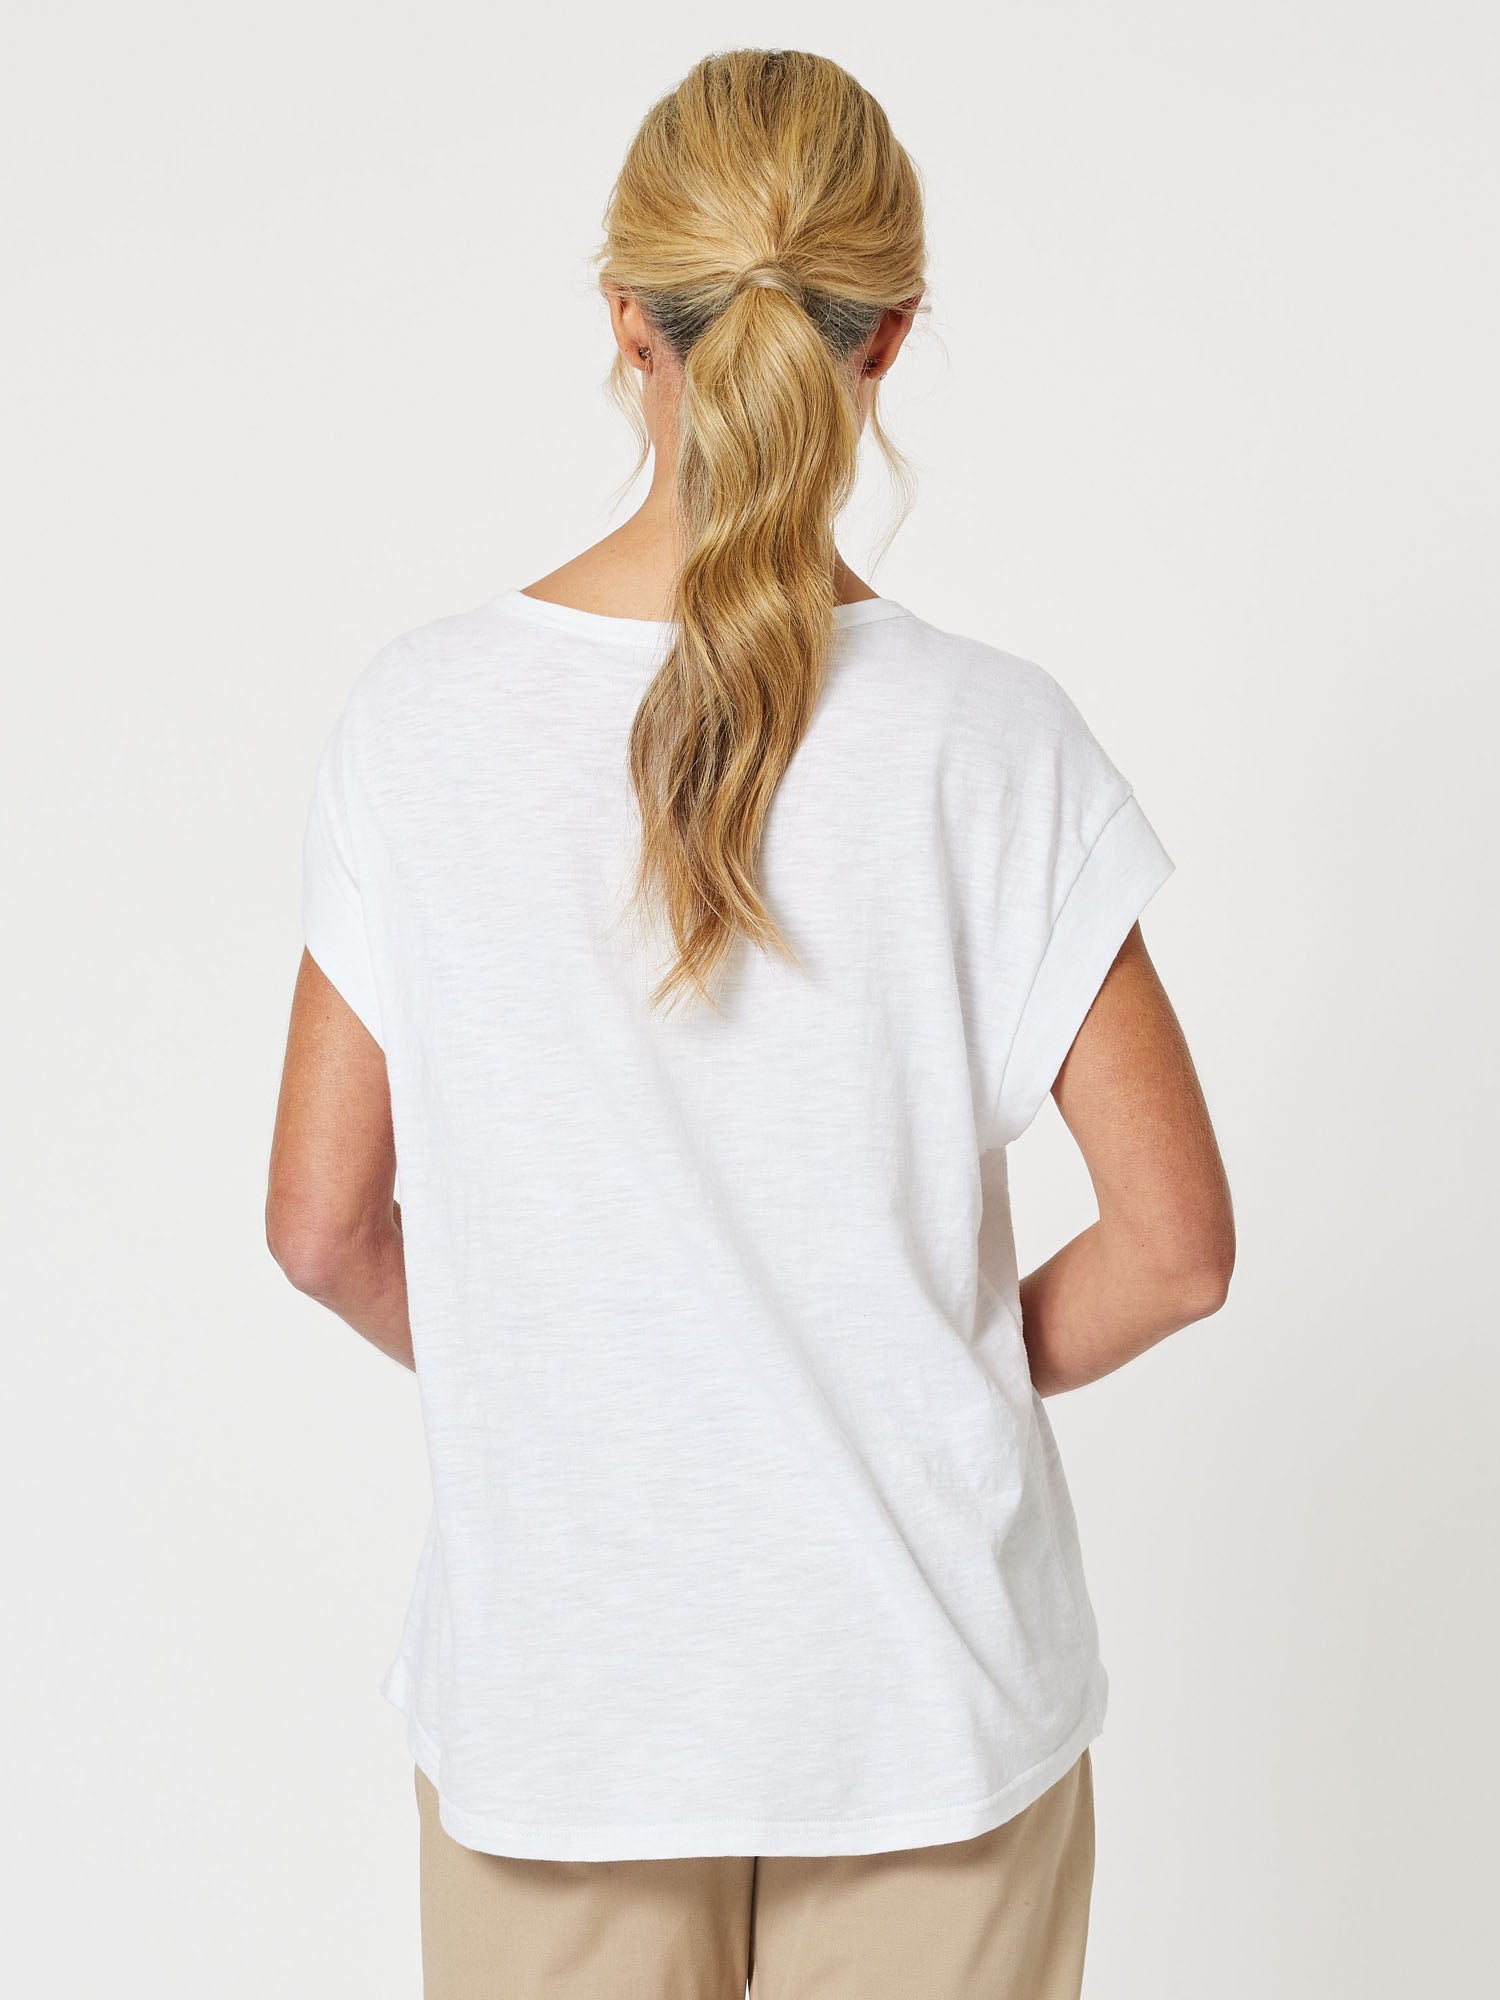 Applique Cotton Short Sleeve T-Shirt - White/Natural